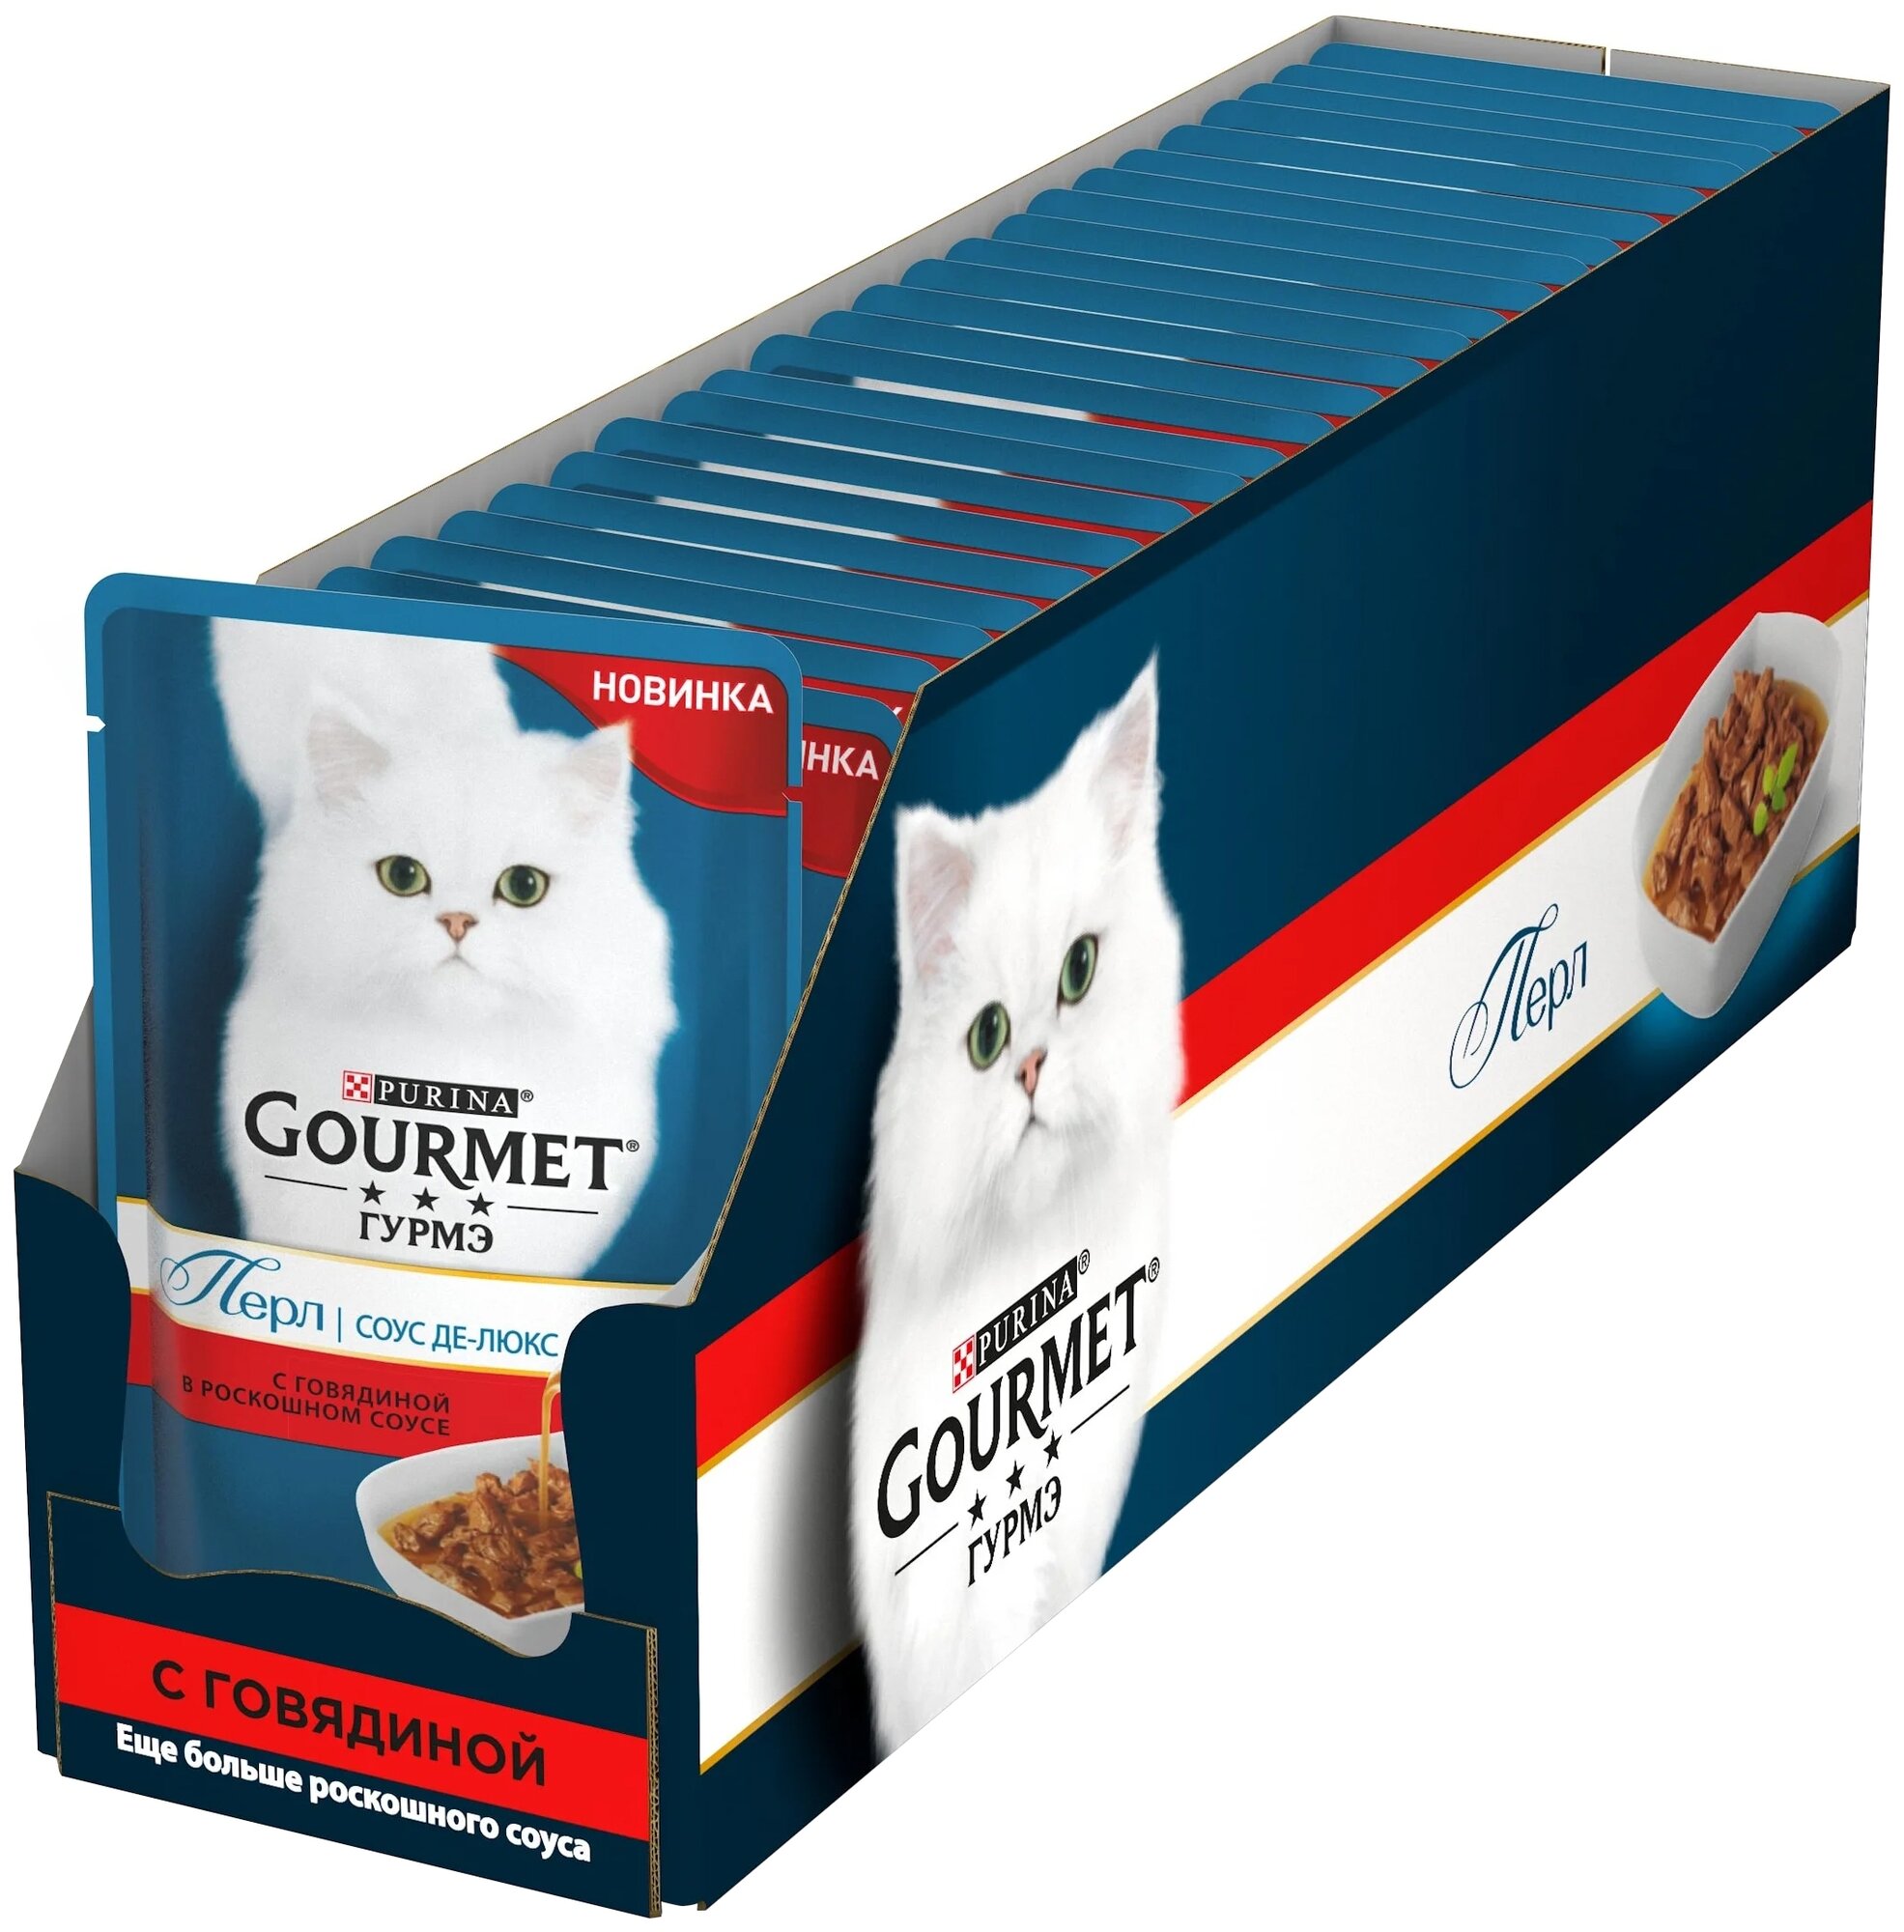 Влажный корм для кошек Gourmet гурмэ Перл Соус Де-люкс с говядиной 75 г x 26 шт